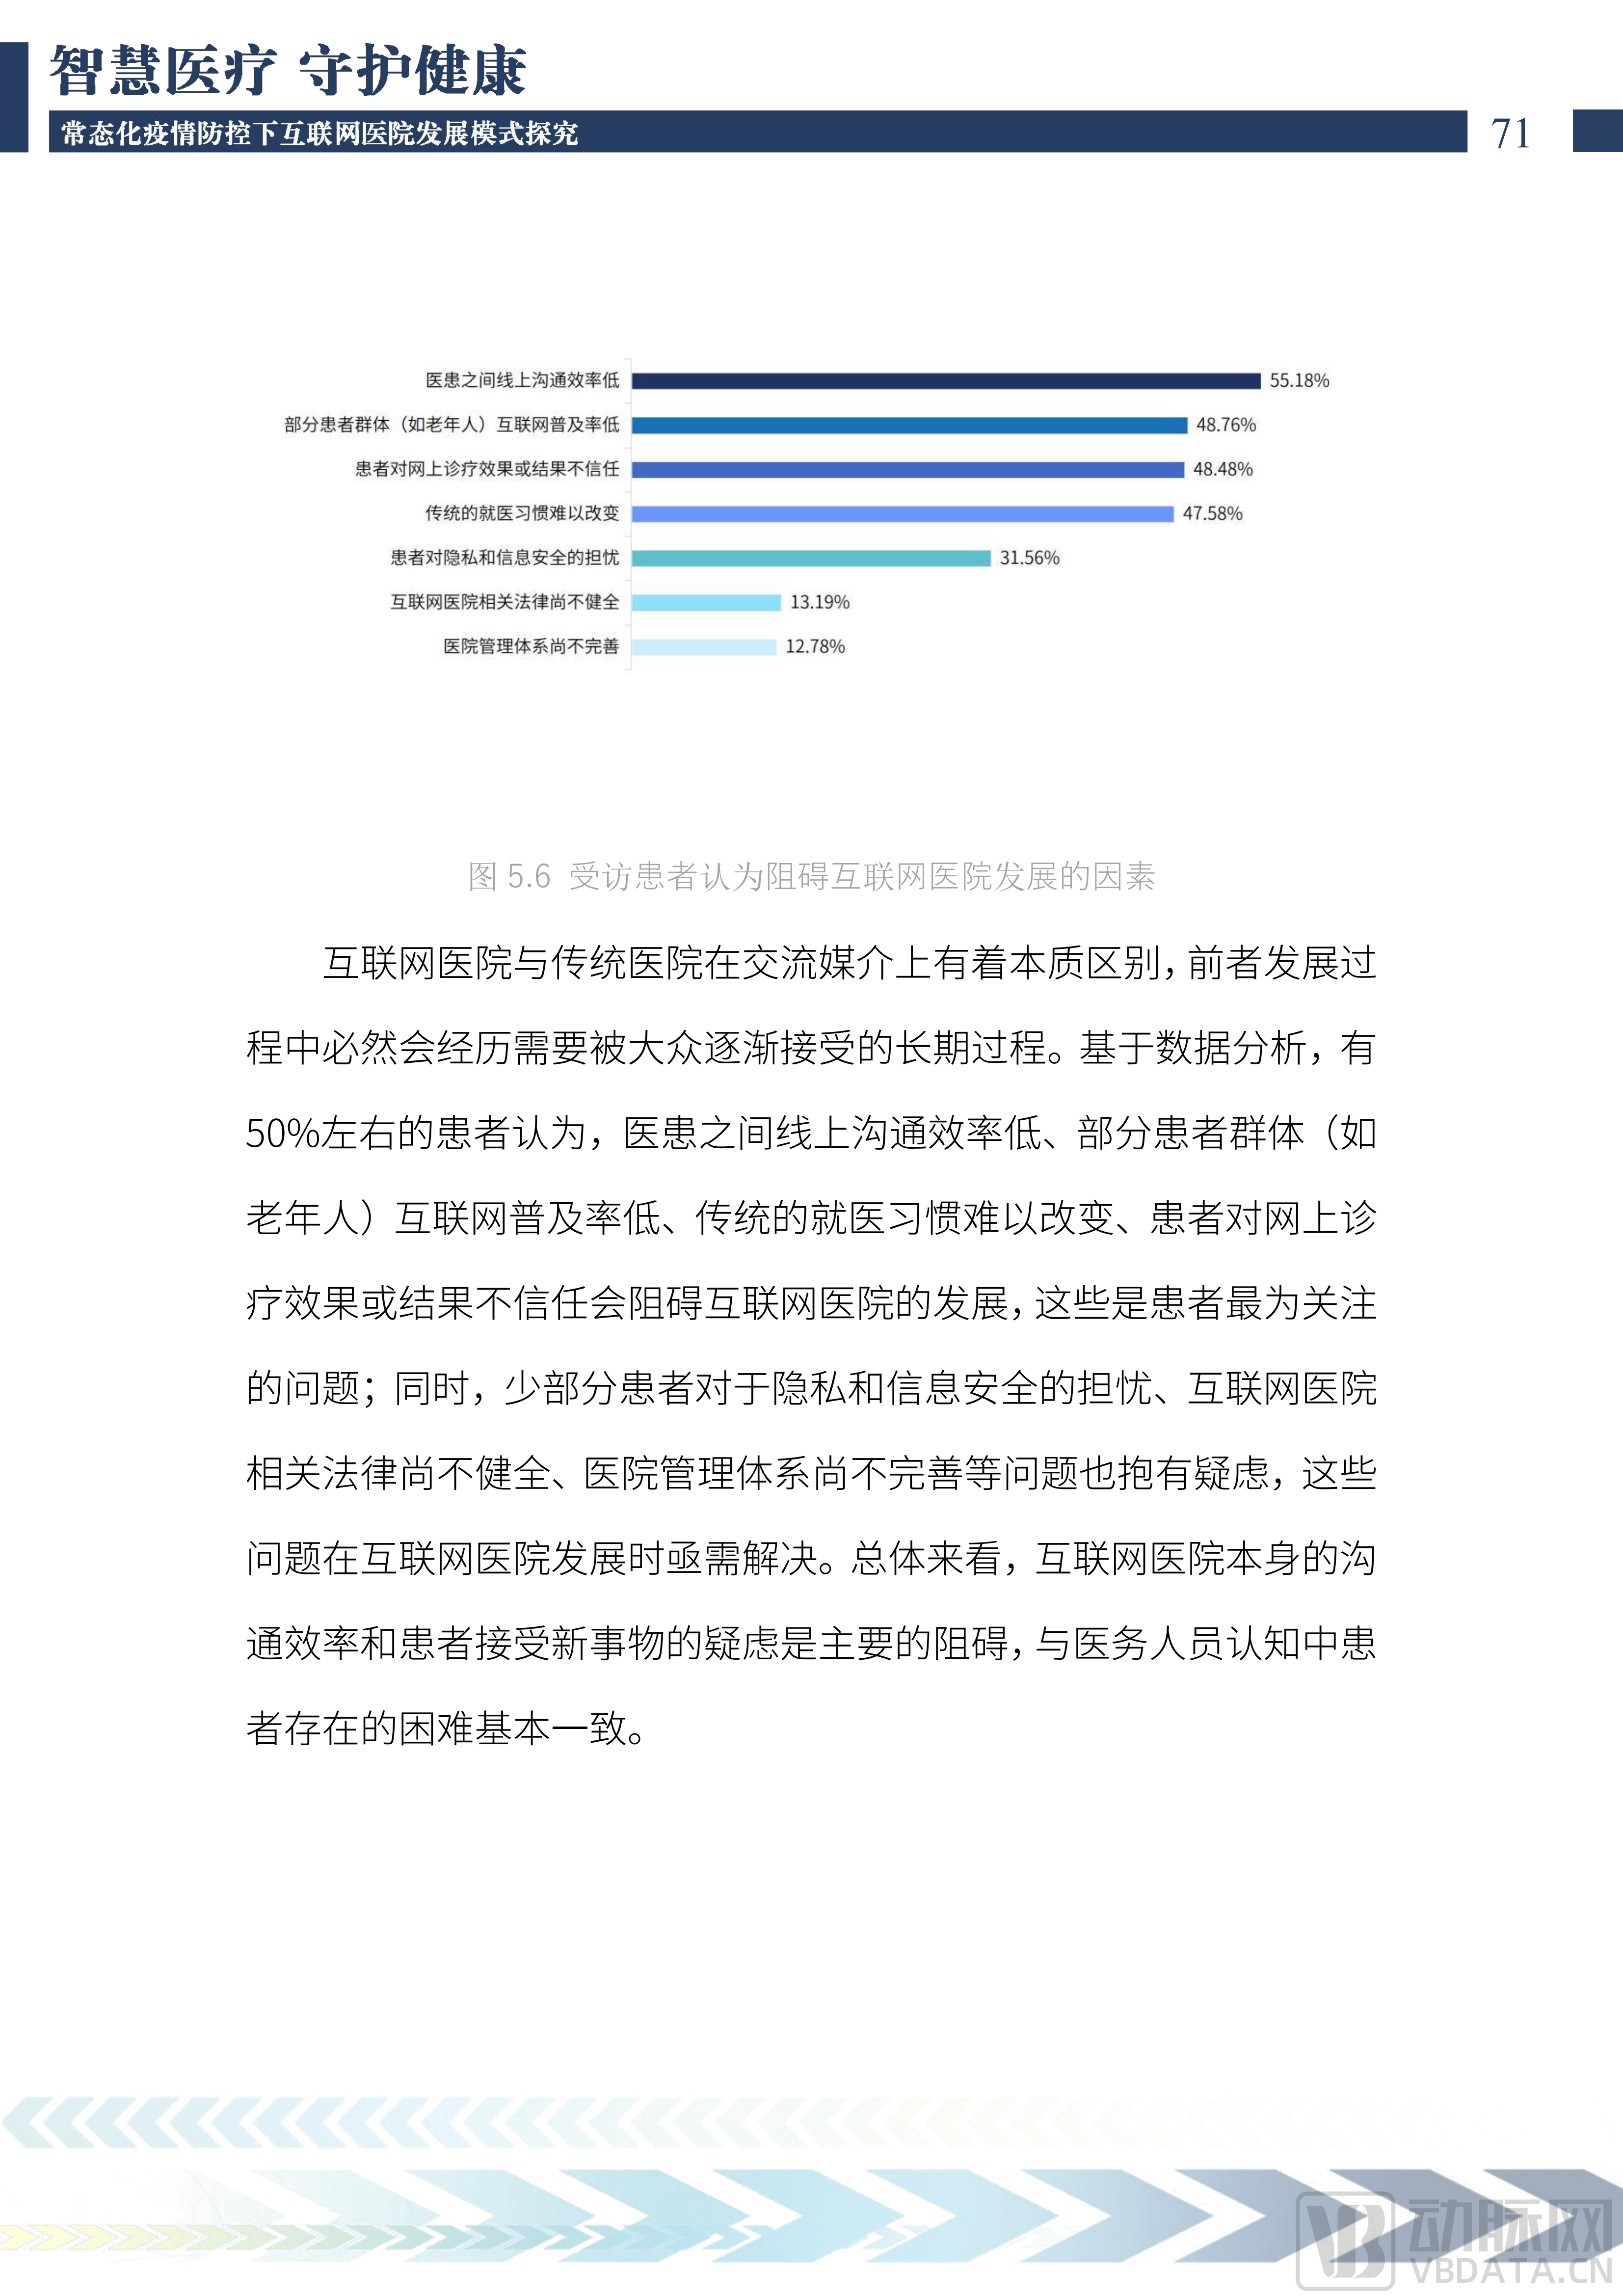 2022中国互联网医院发展调研报告(1)_72.png